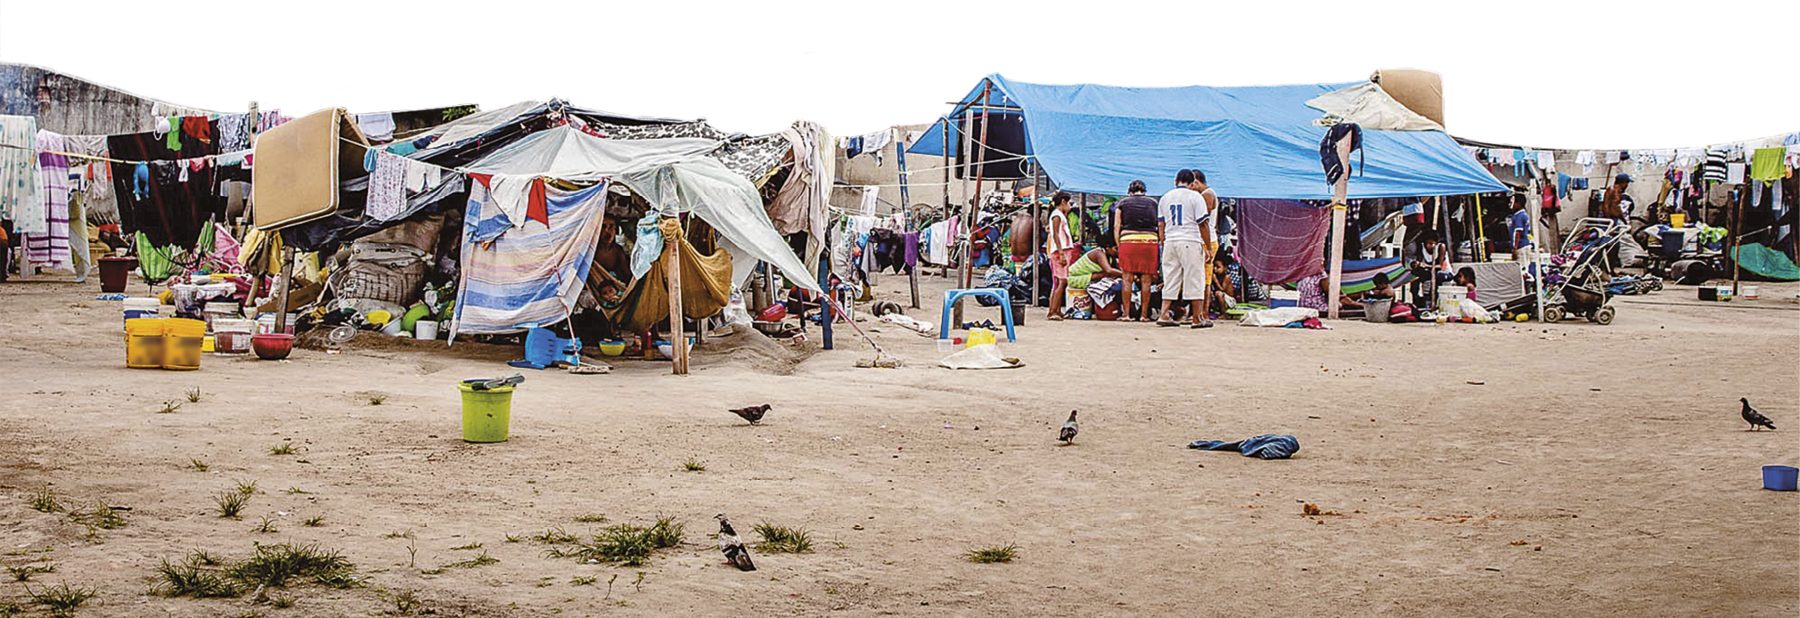 Fotografia. Pessoas em um acampamento improvisado em uma área de terra batida. As tendas são feitas com lonas e tecidos sobrepostos, presos em estacas. Os pertences das pessoas estão aglomerados sob as tendas. À esquerda, há um varal pendurado fora de uma tenda, com roupas de crianças, roupas de cama e um colchão pendurado.